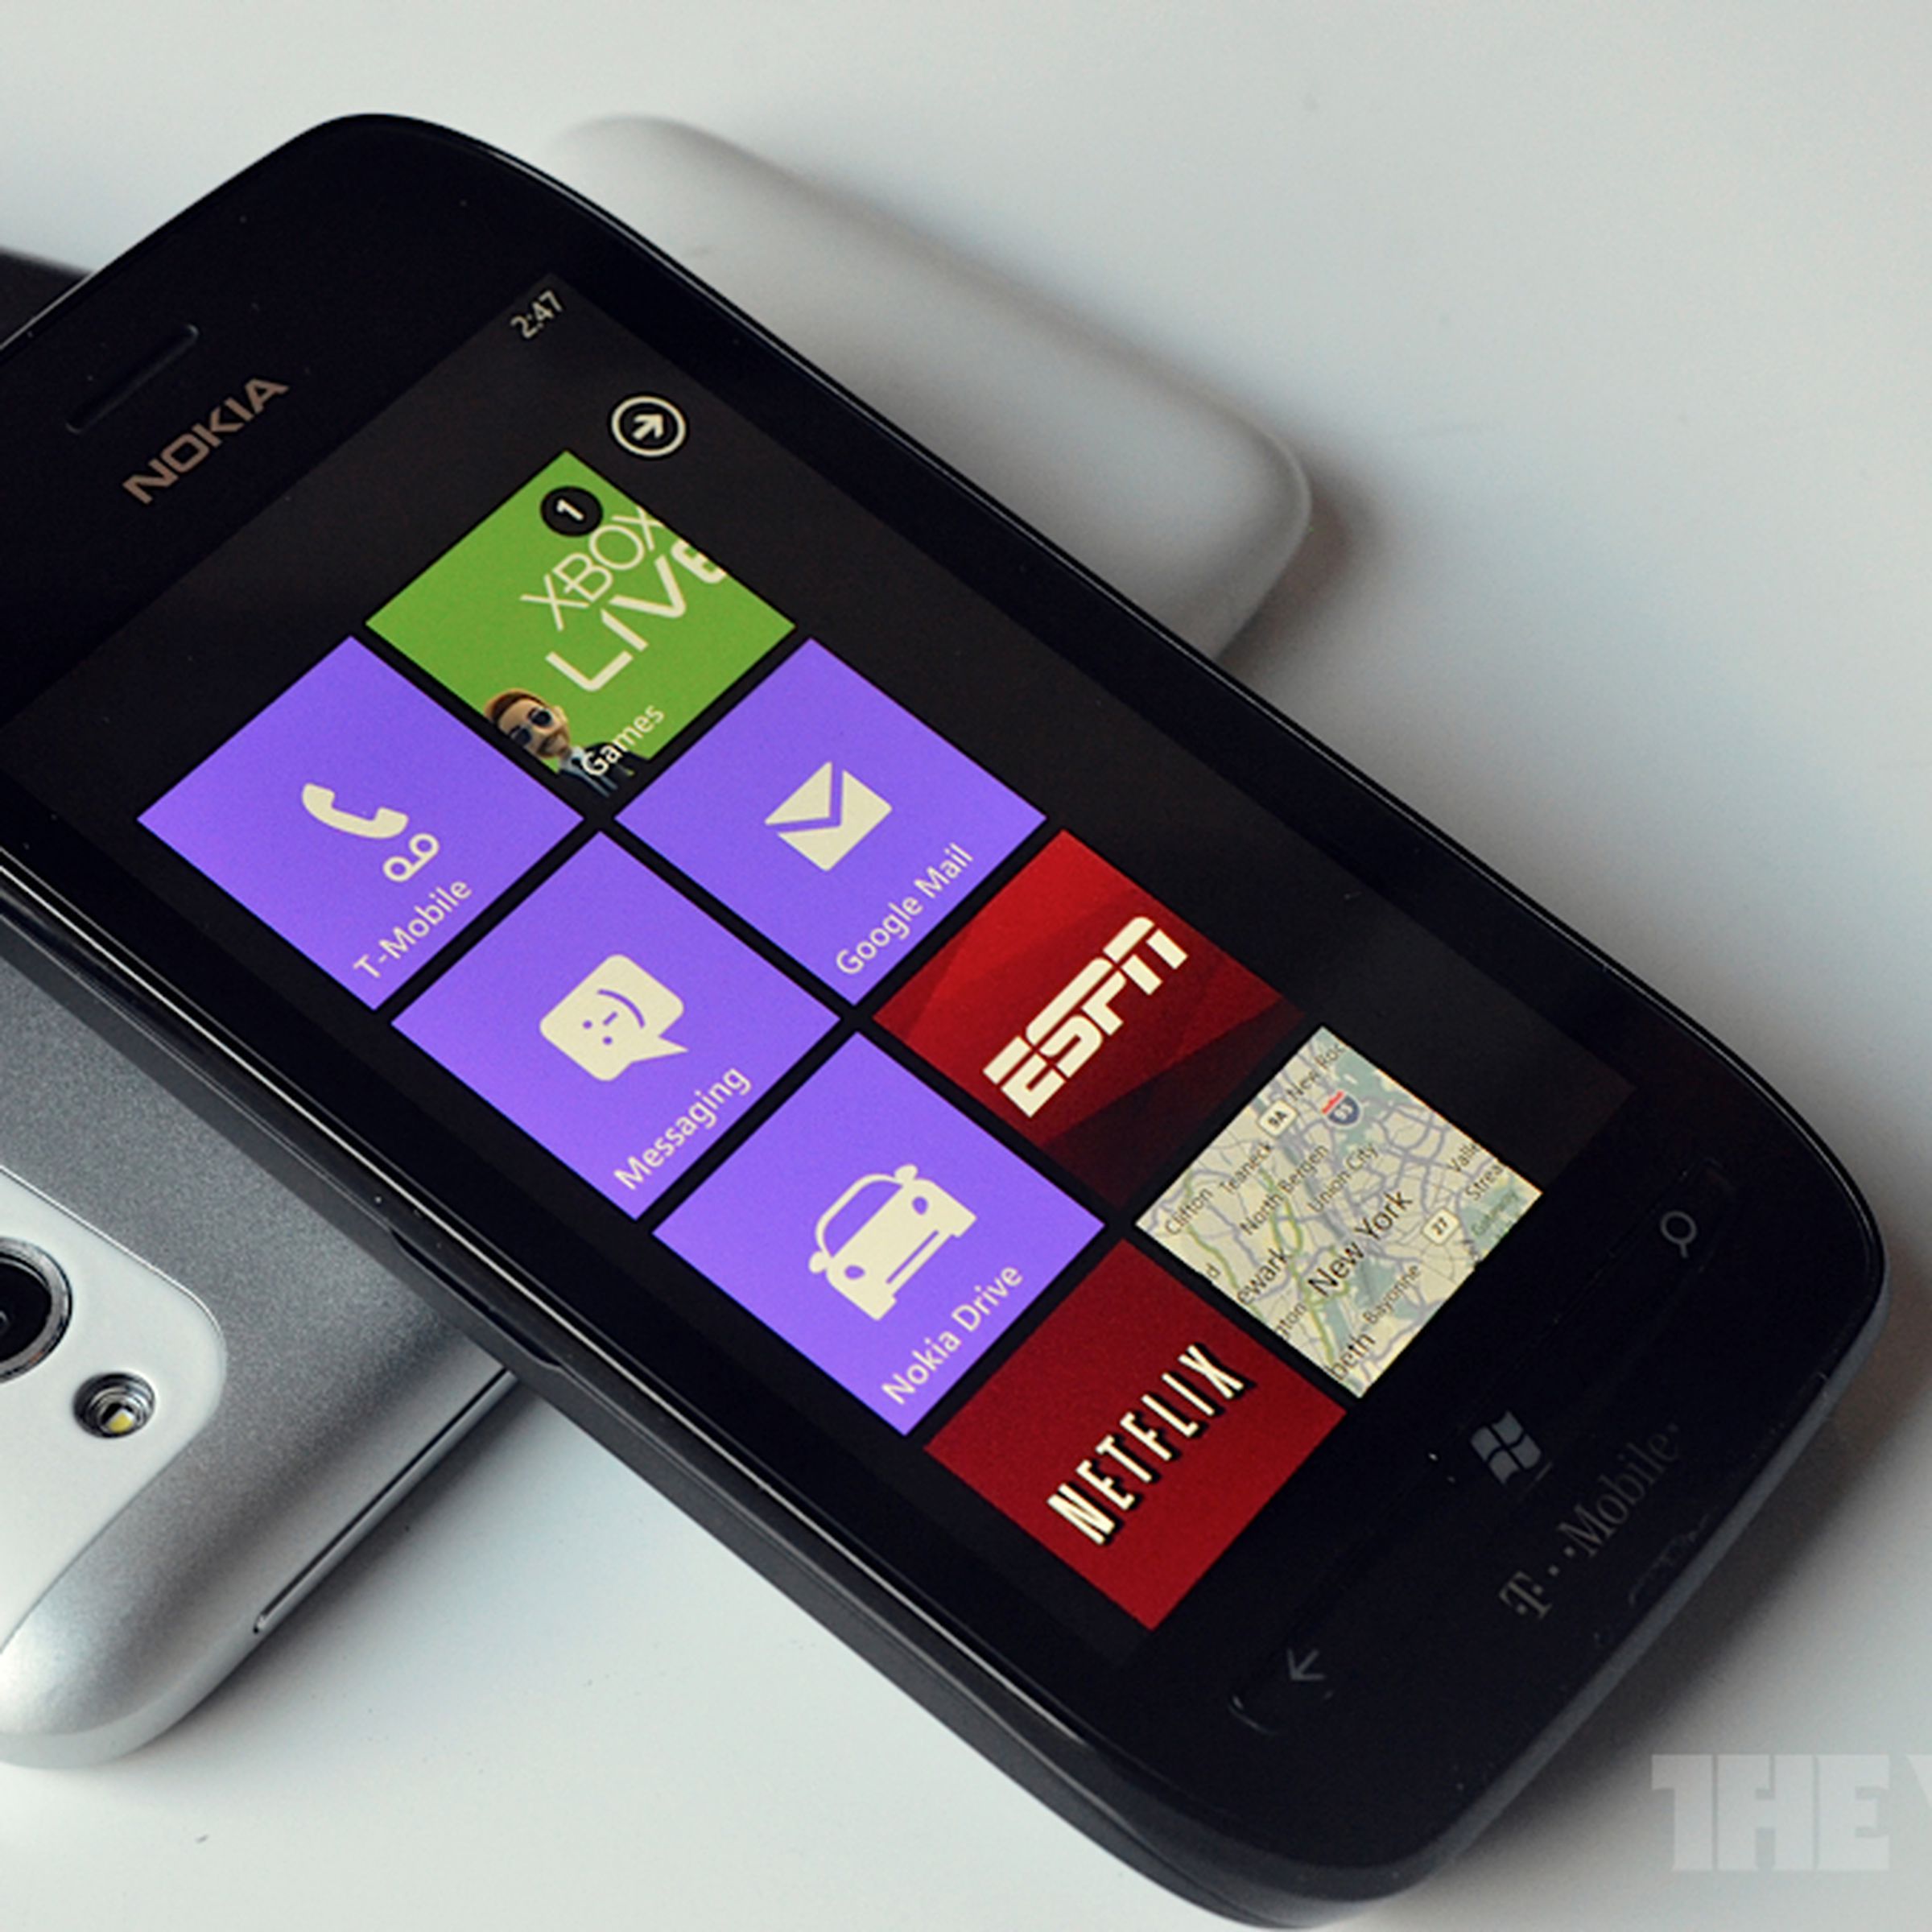 Nokia Lumia 710 Hero